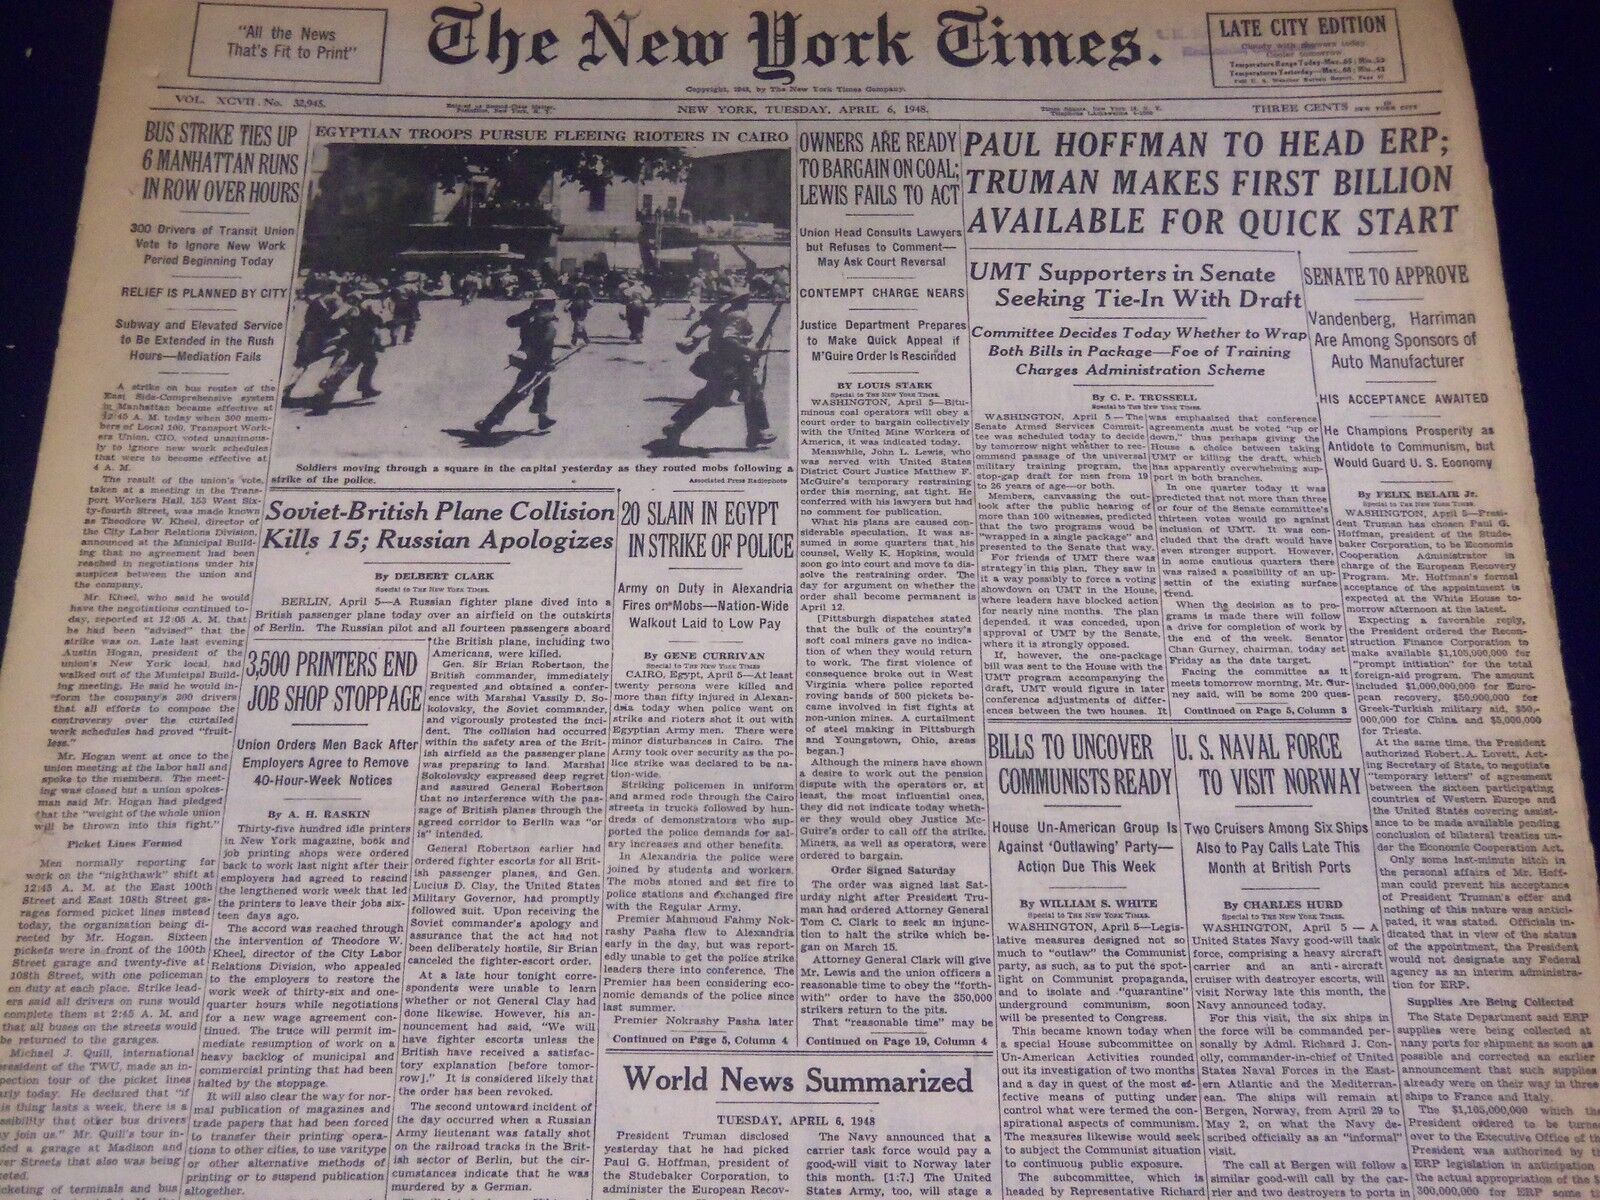 1948 APRIL 6 NEW YORK TIMES - POLICE STRIKE IN EGYPT KILLS 20 - NT 3538